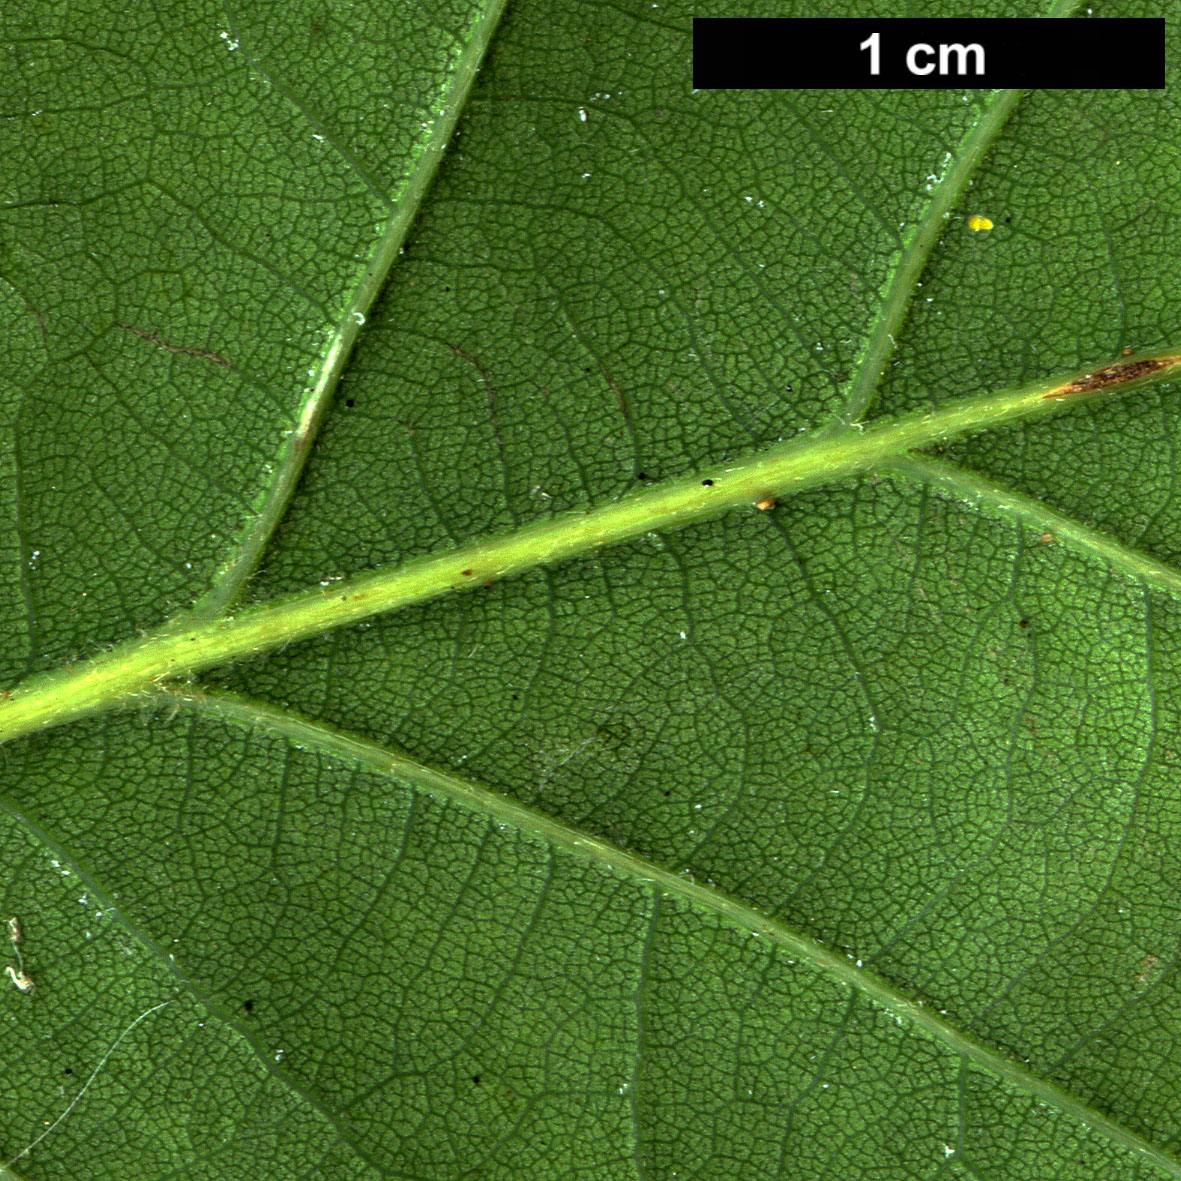 High resolution image: Family: Fagaceae - Genus: Quercus - Taxon: ×streimii  (Q.petraea × Q.pubescens)